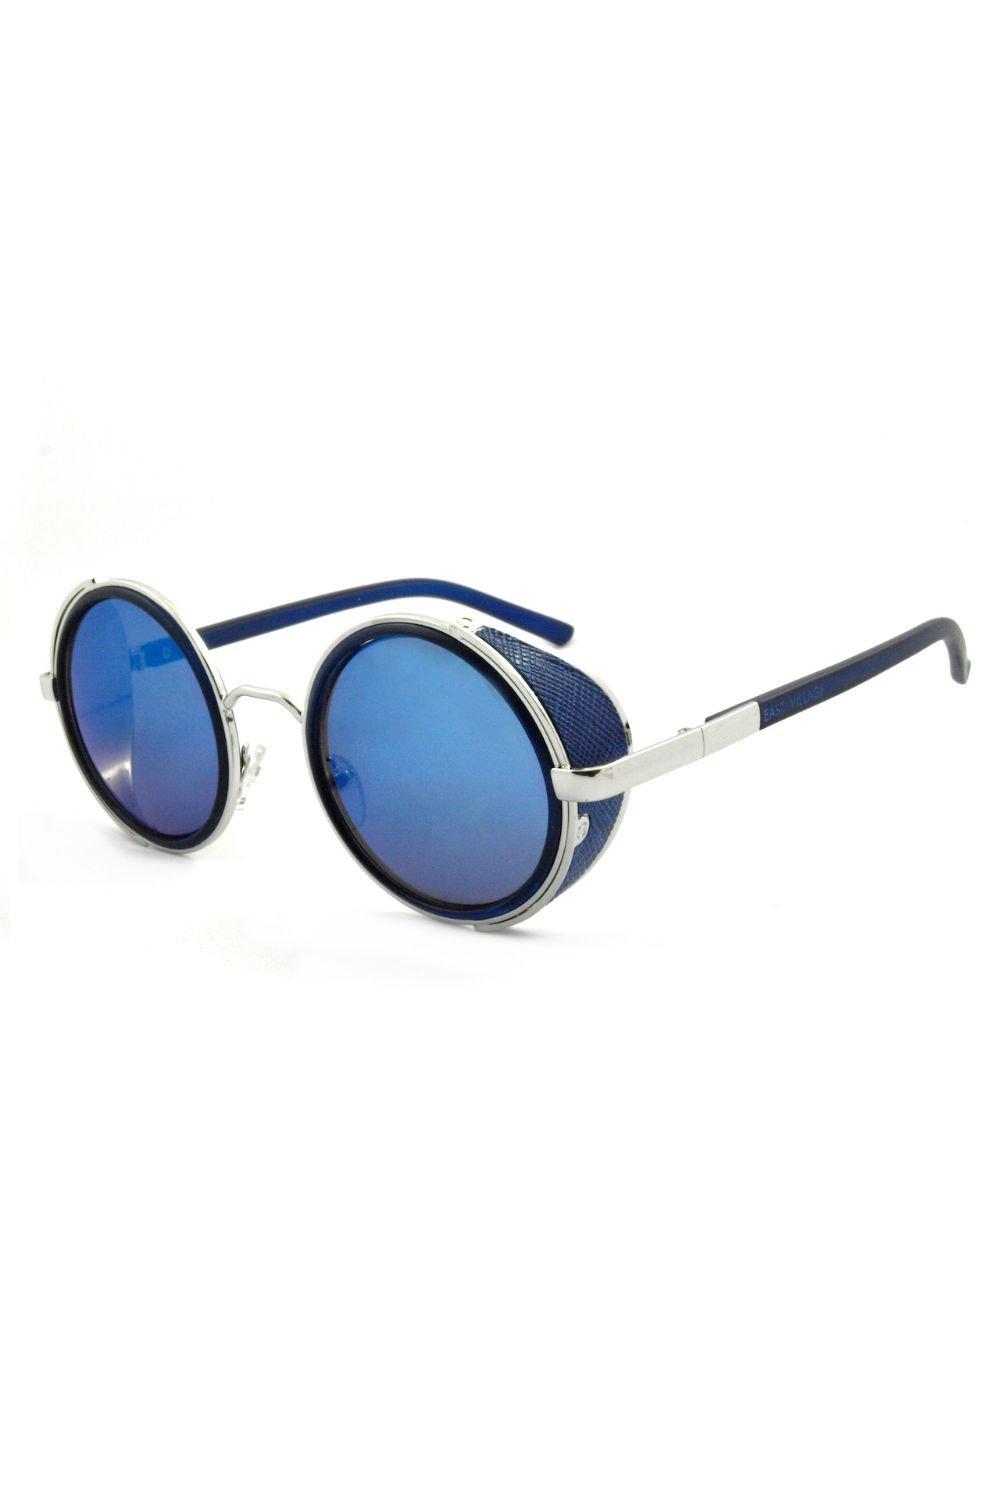 village susegat Круглые солнцезащитные очки Freeman East Village, синий